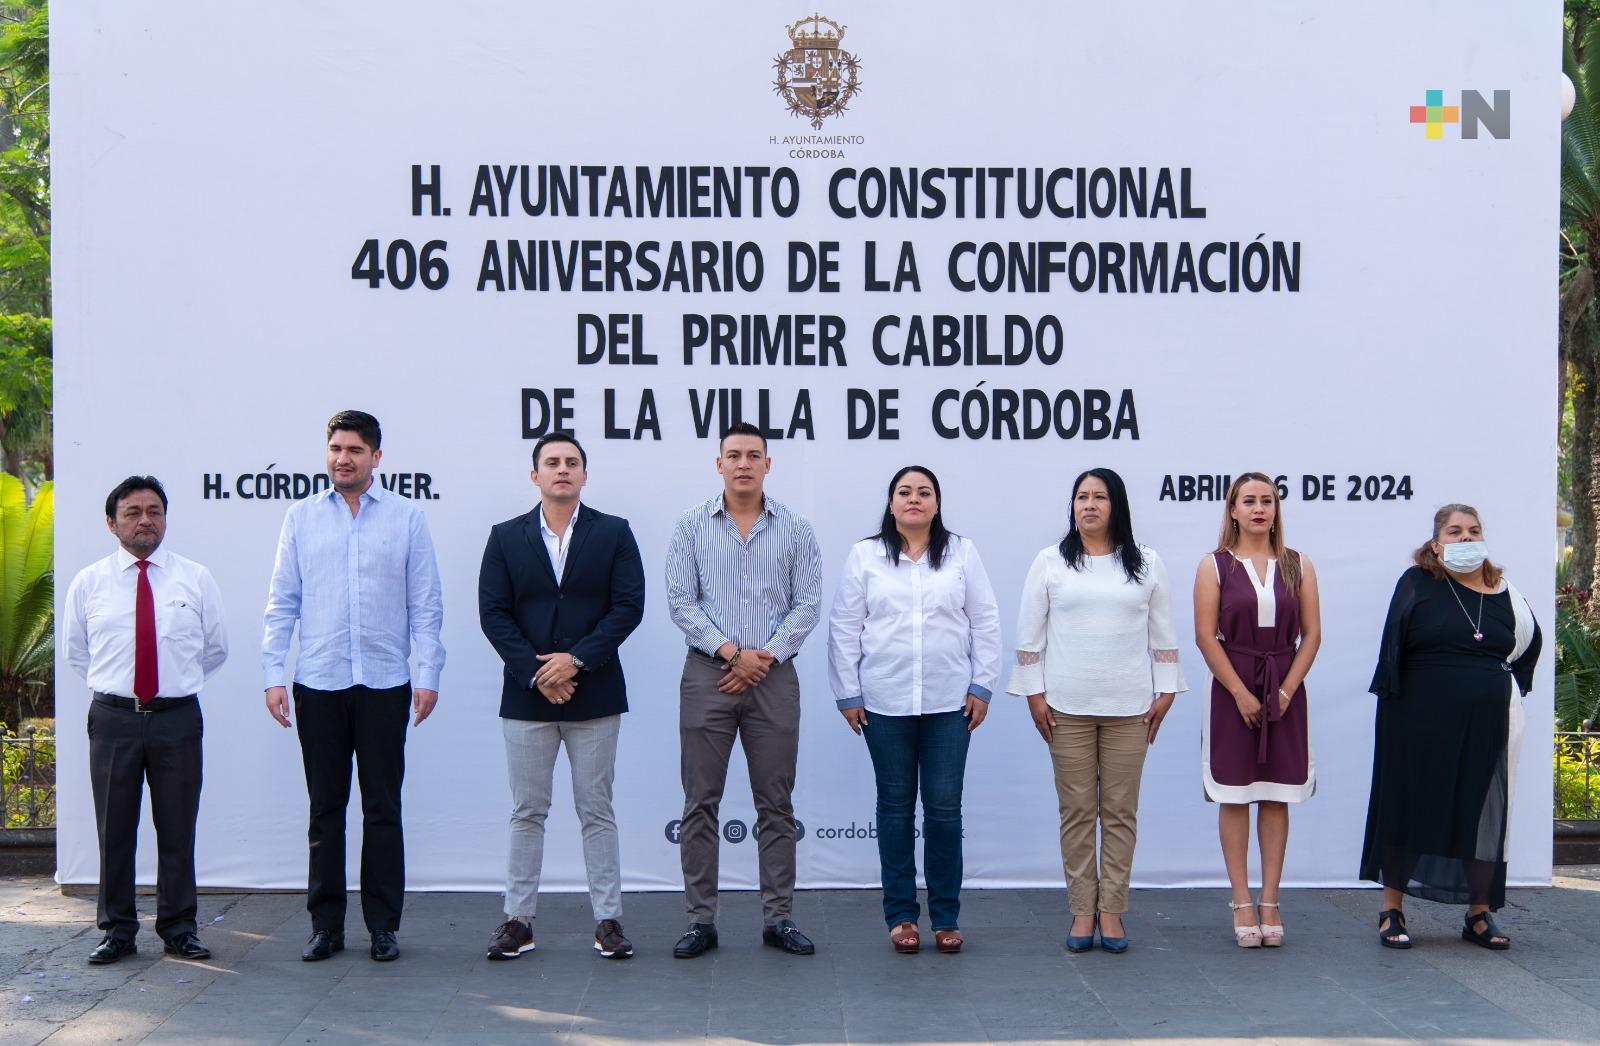 Conmemoran 406 aniversario de la conformación del primer cabildo de Córdoba